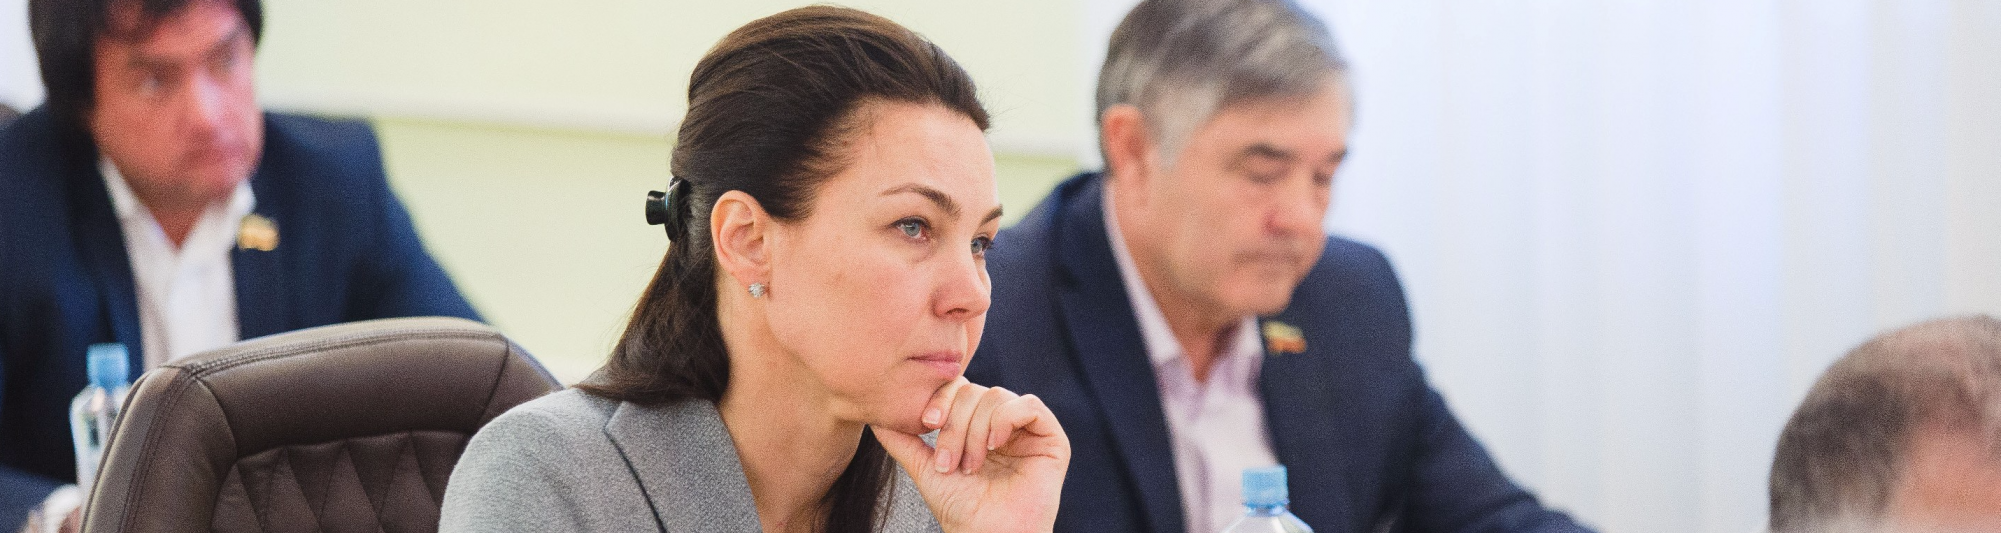 Ирина Вавилова избрана заместителем председателя комиссии по регламенту и правовым вопросам